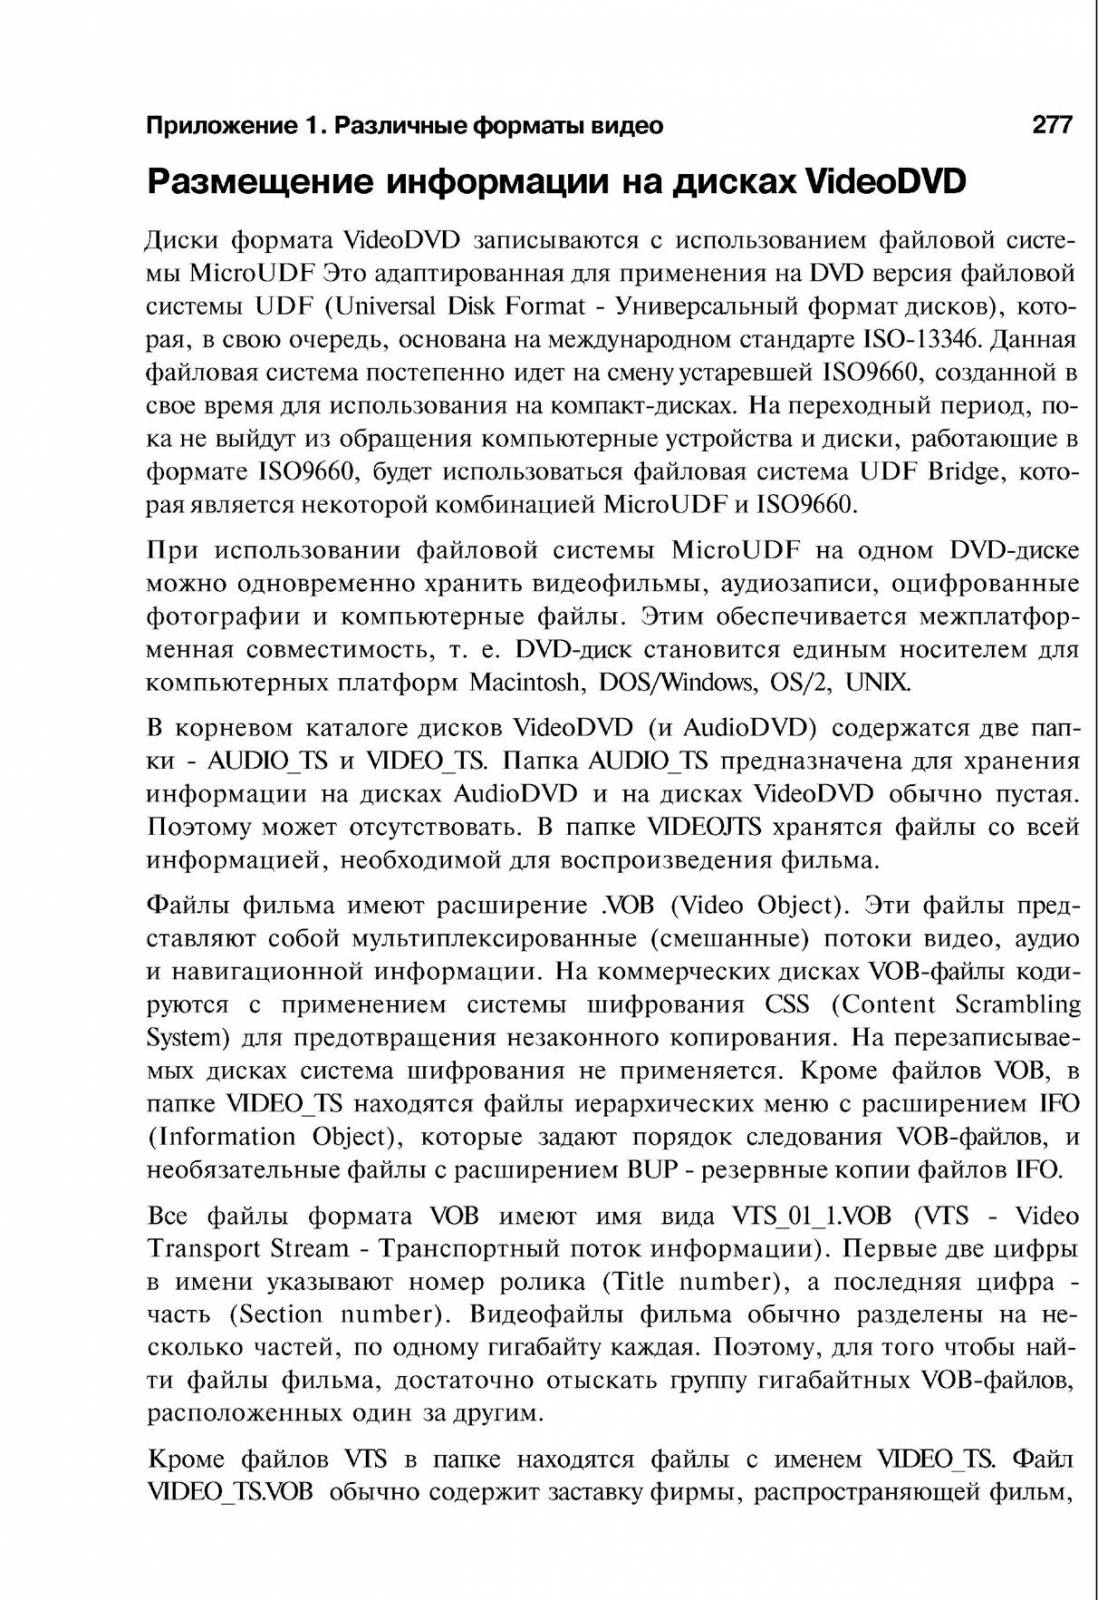 http://redaktori-uroki.3dn.ru/_ph/14/749949839.jpg